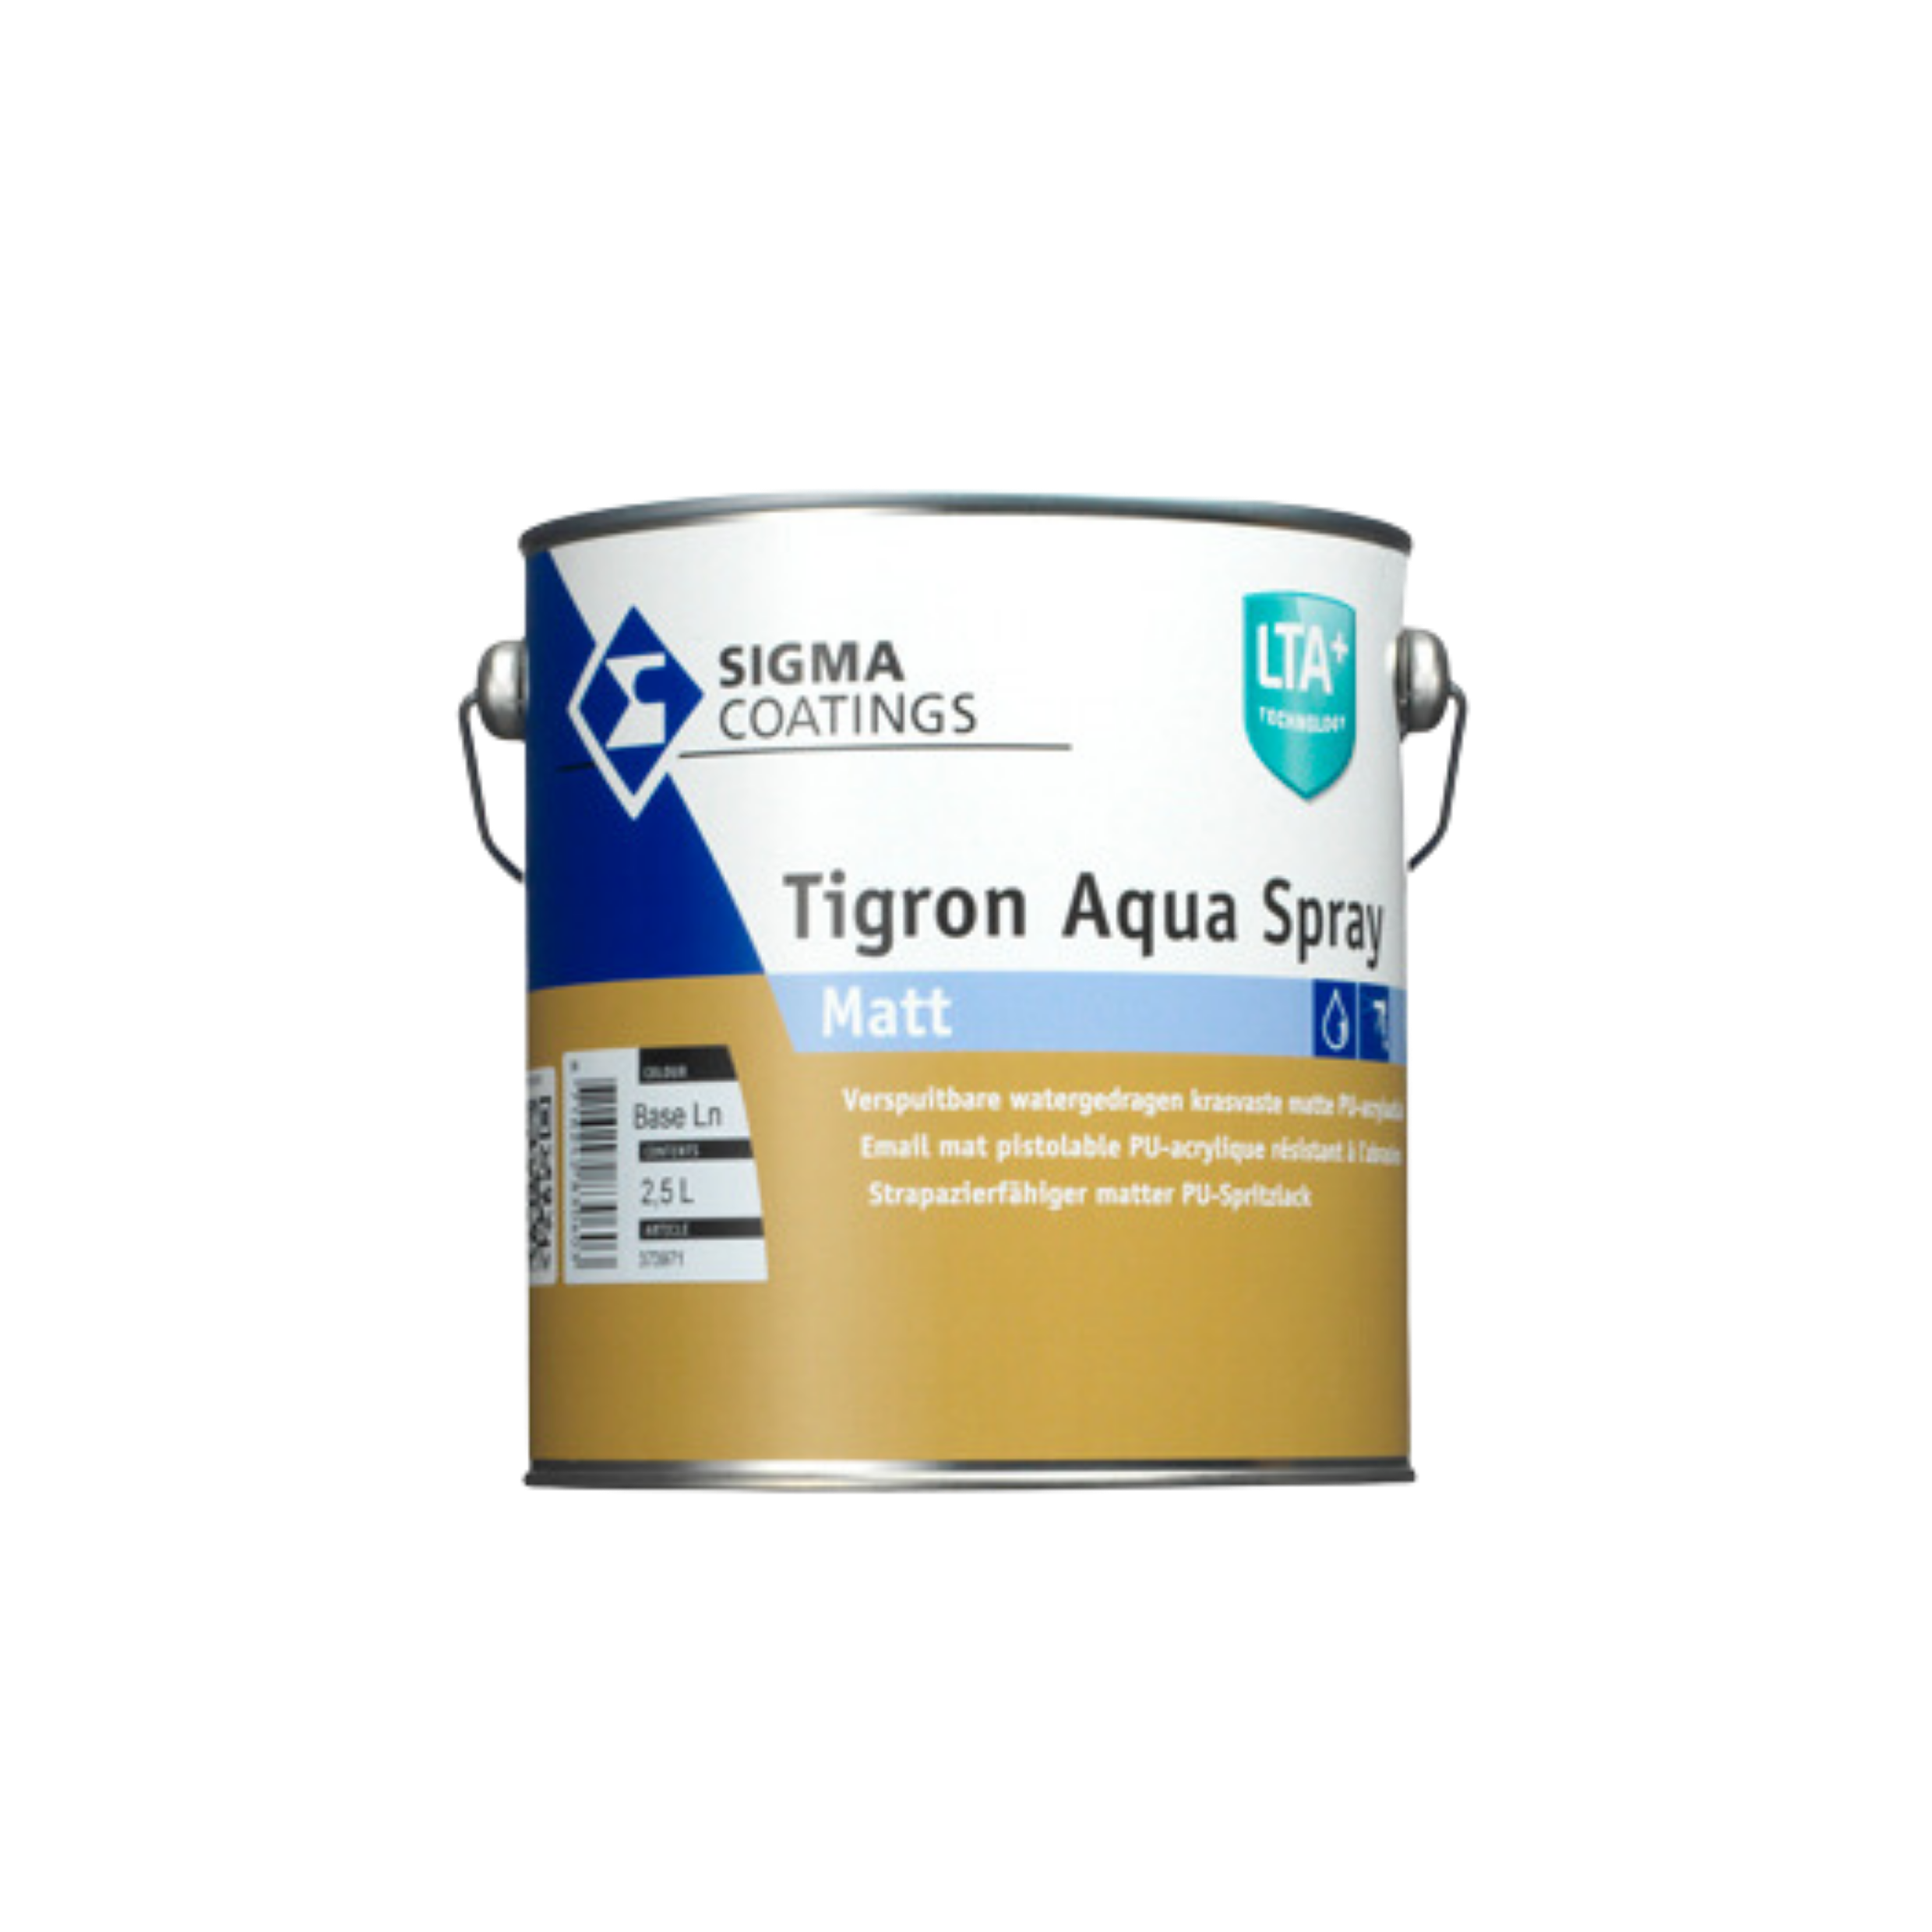 Tigron Aqua Spray Matt-image